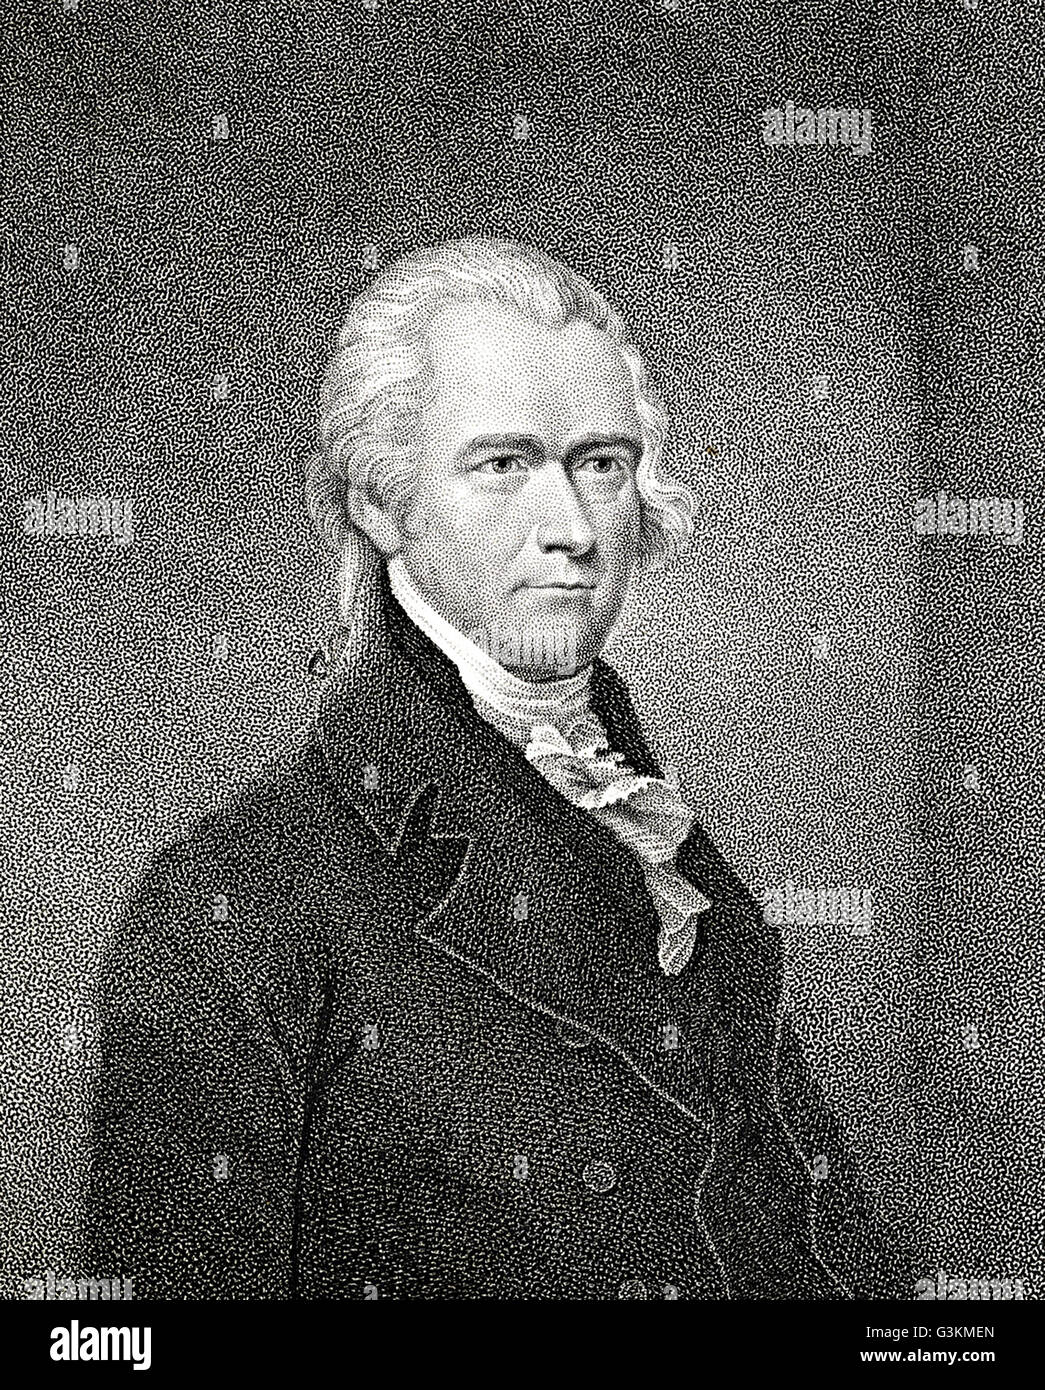 Alexander Hamilton, 1755 o 1757 - 1804 Stock Photo